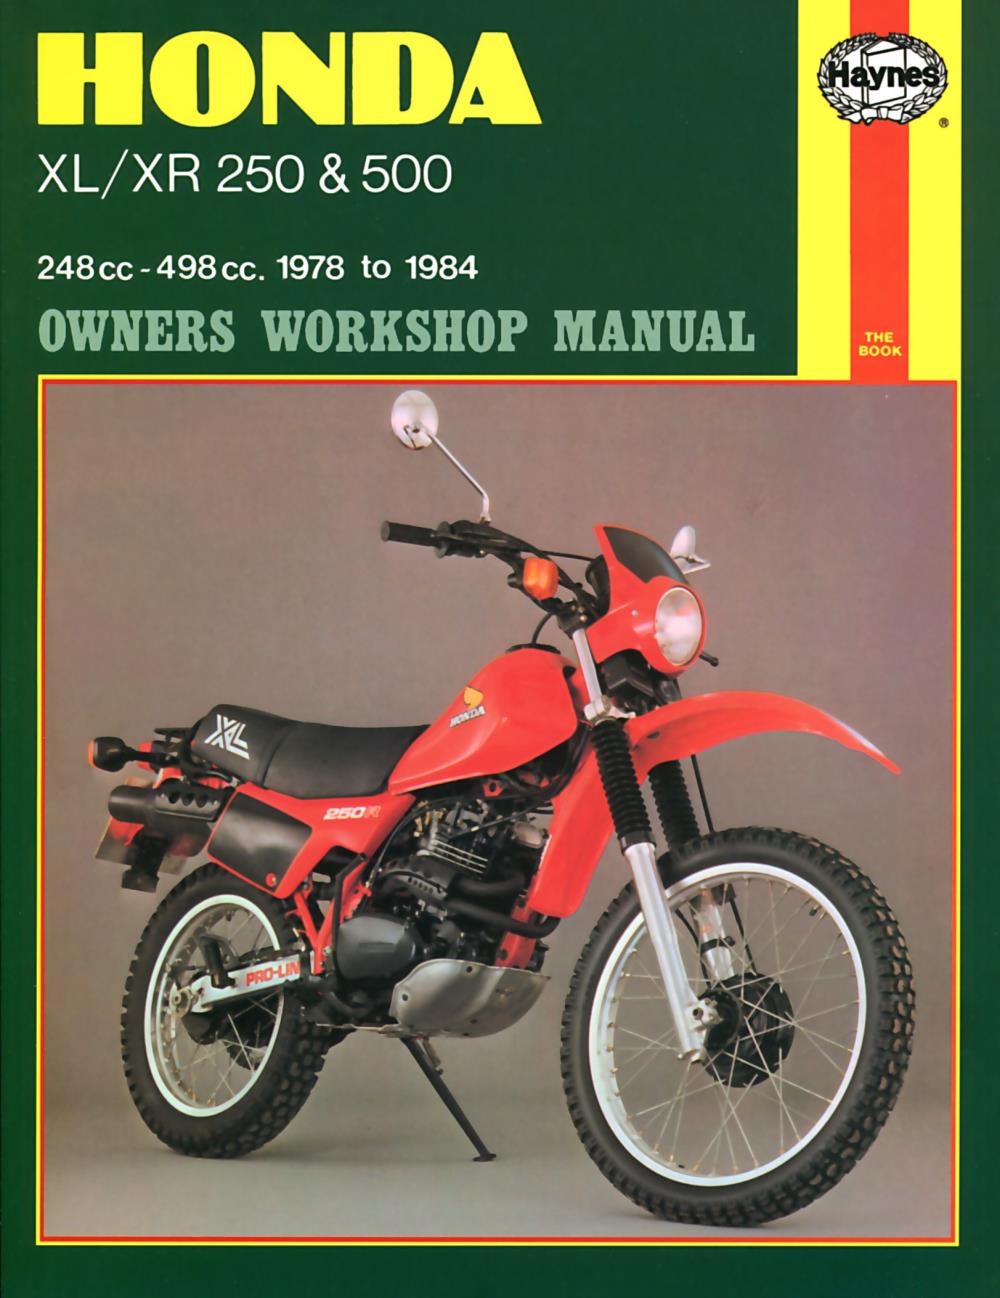 Manual Haynes For 1980 Honda Xl 250 Sa Ebay